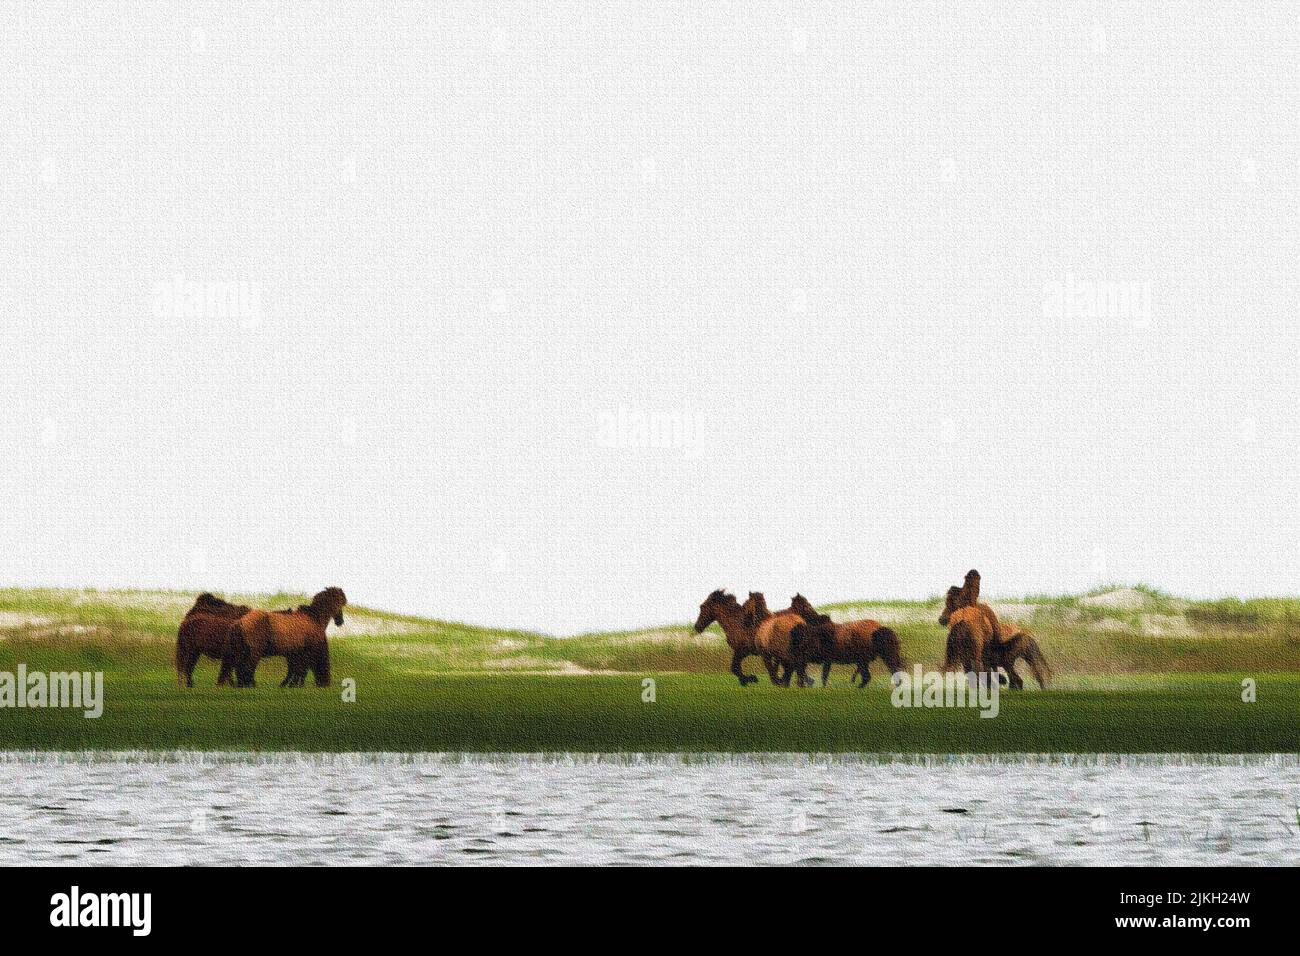 Gruppo di cavalli - stalloni che iniziano a inseguire l'un l'altro sulla riserva di Rachel Carson, composta da Town Marsh, Carrot Island, Bird Shoal e Horse Island. Foto Stock